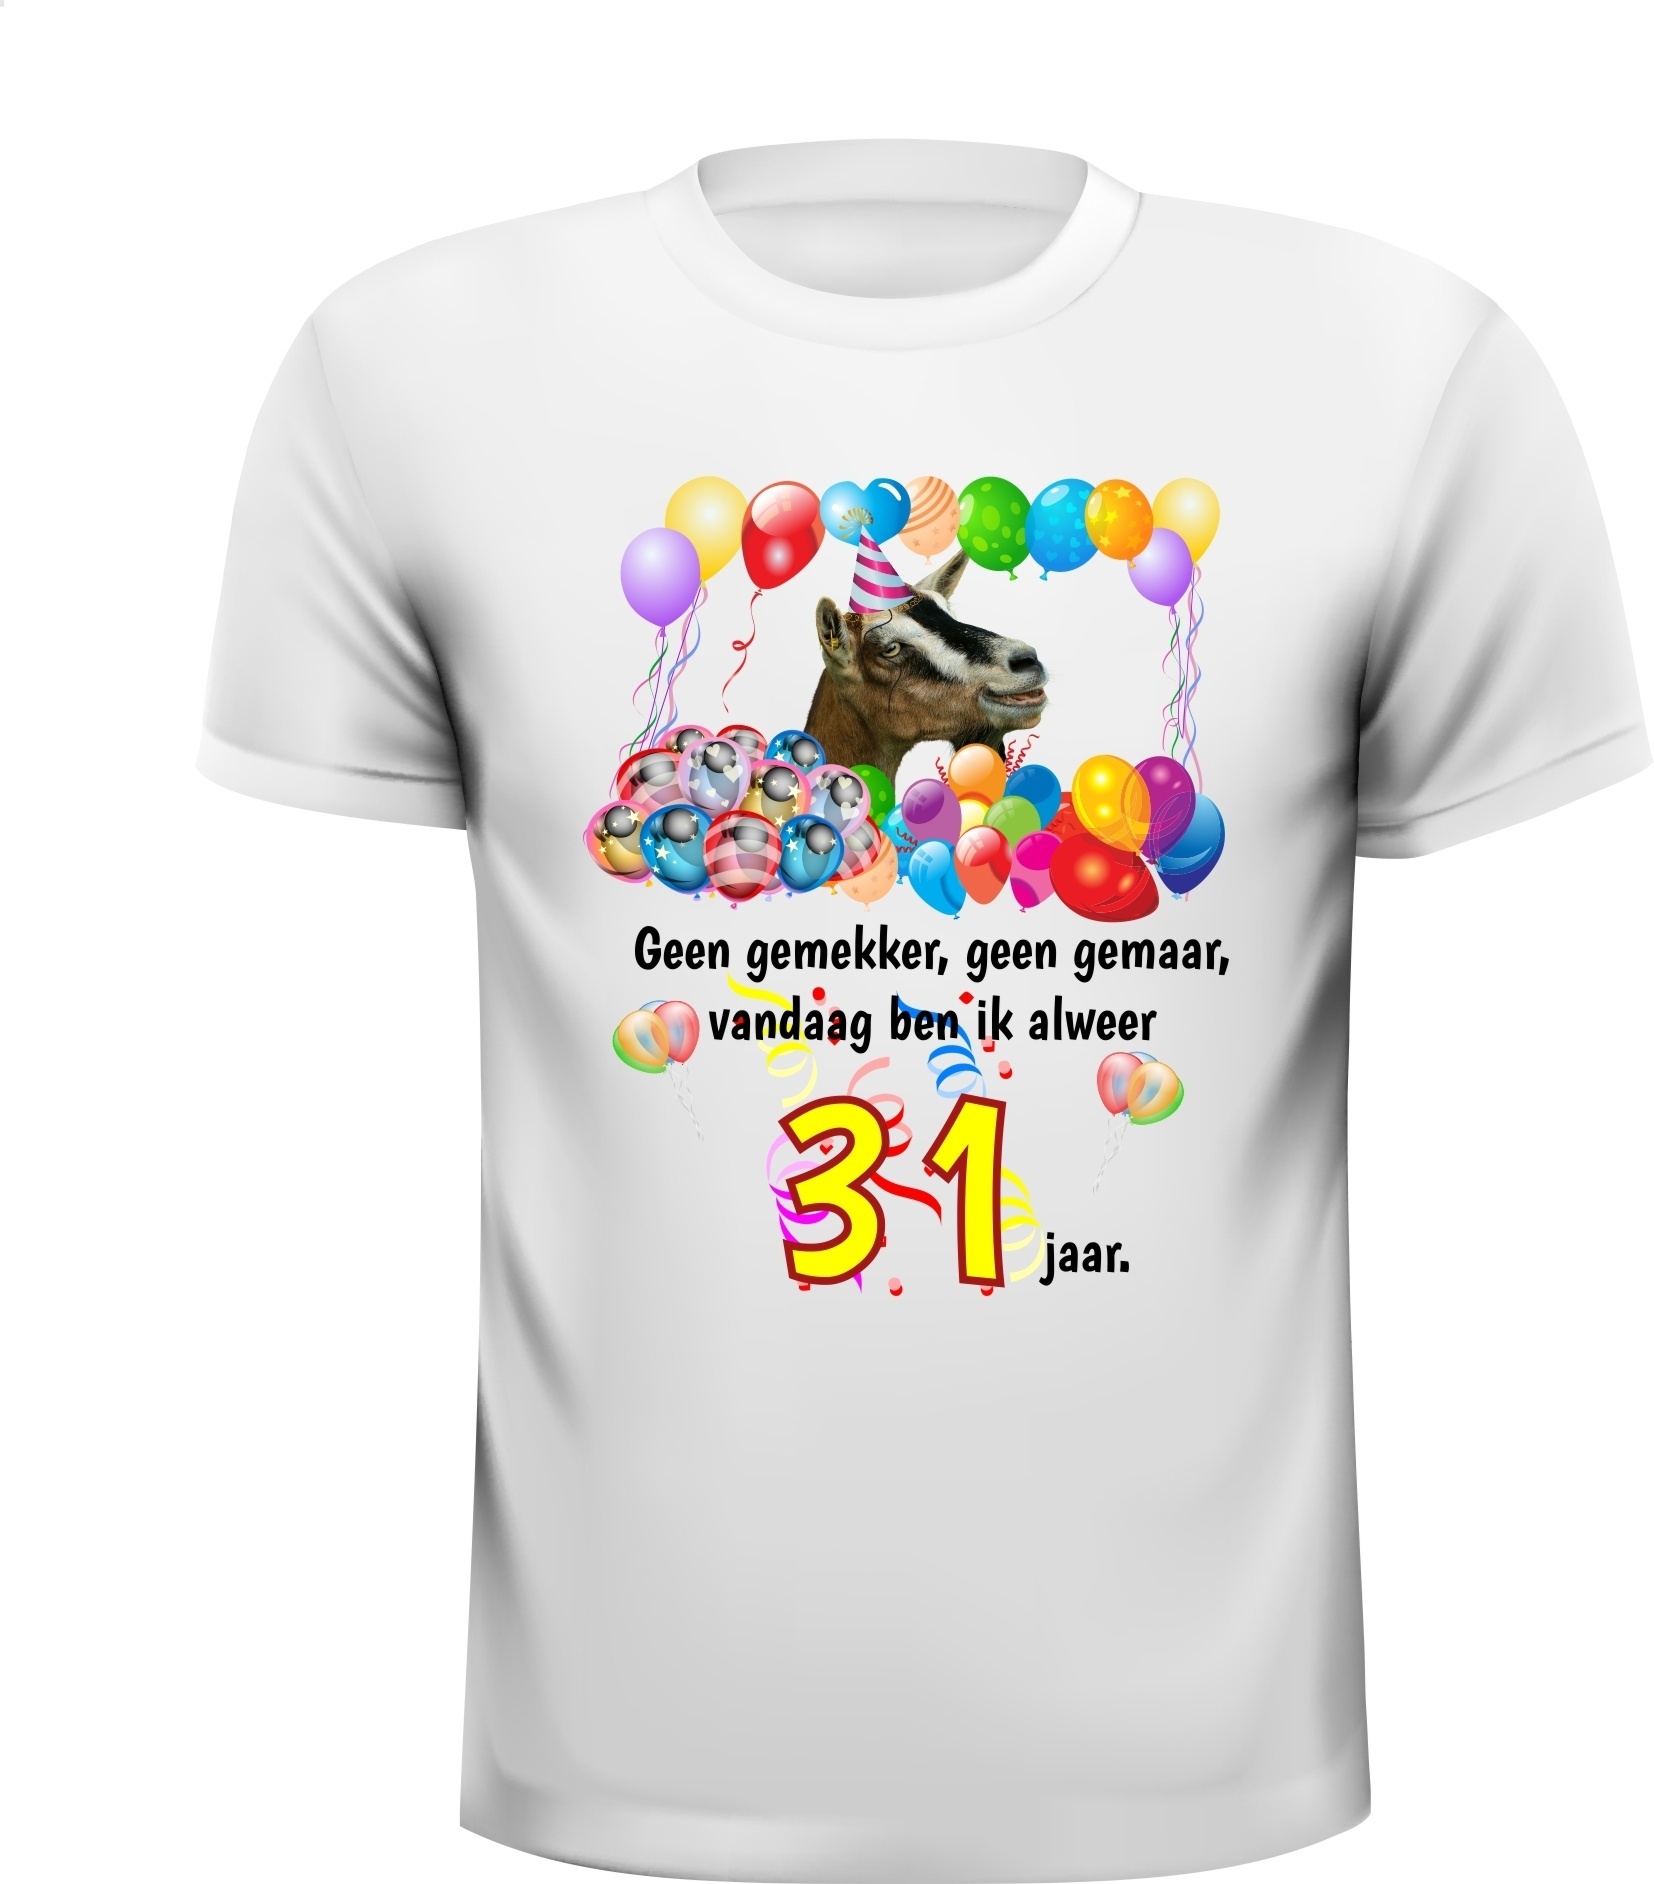 Mooi orgineel full colour shirt feestelijk 31 jaar afbeelding feest geit